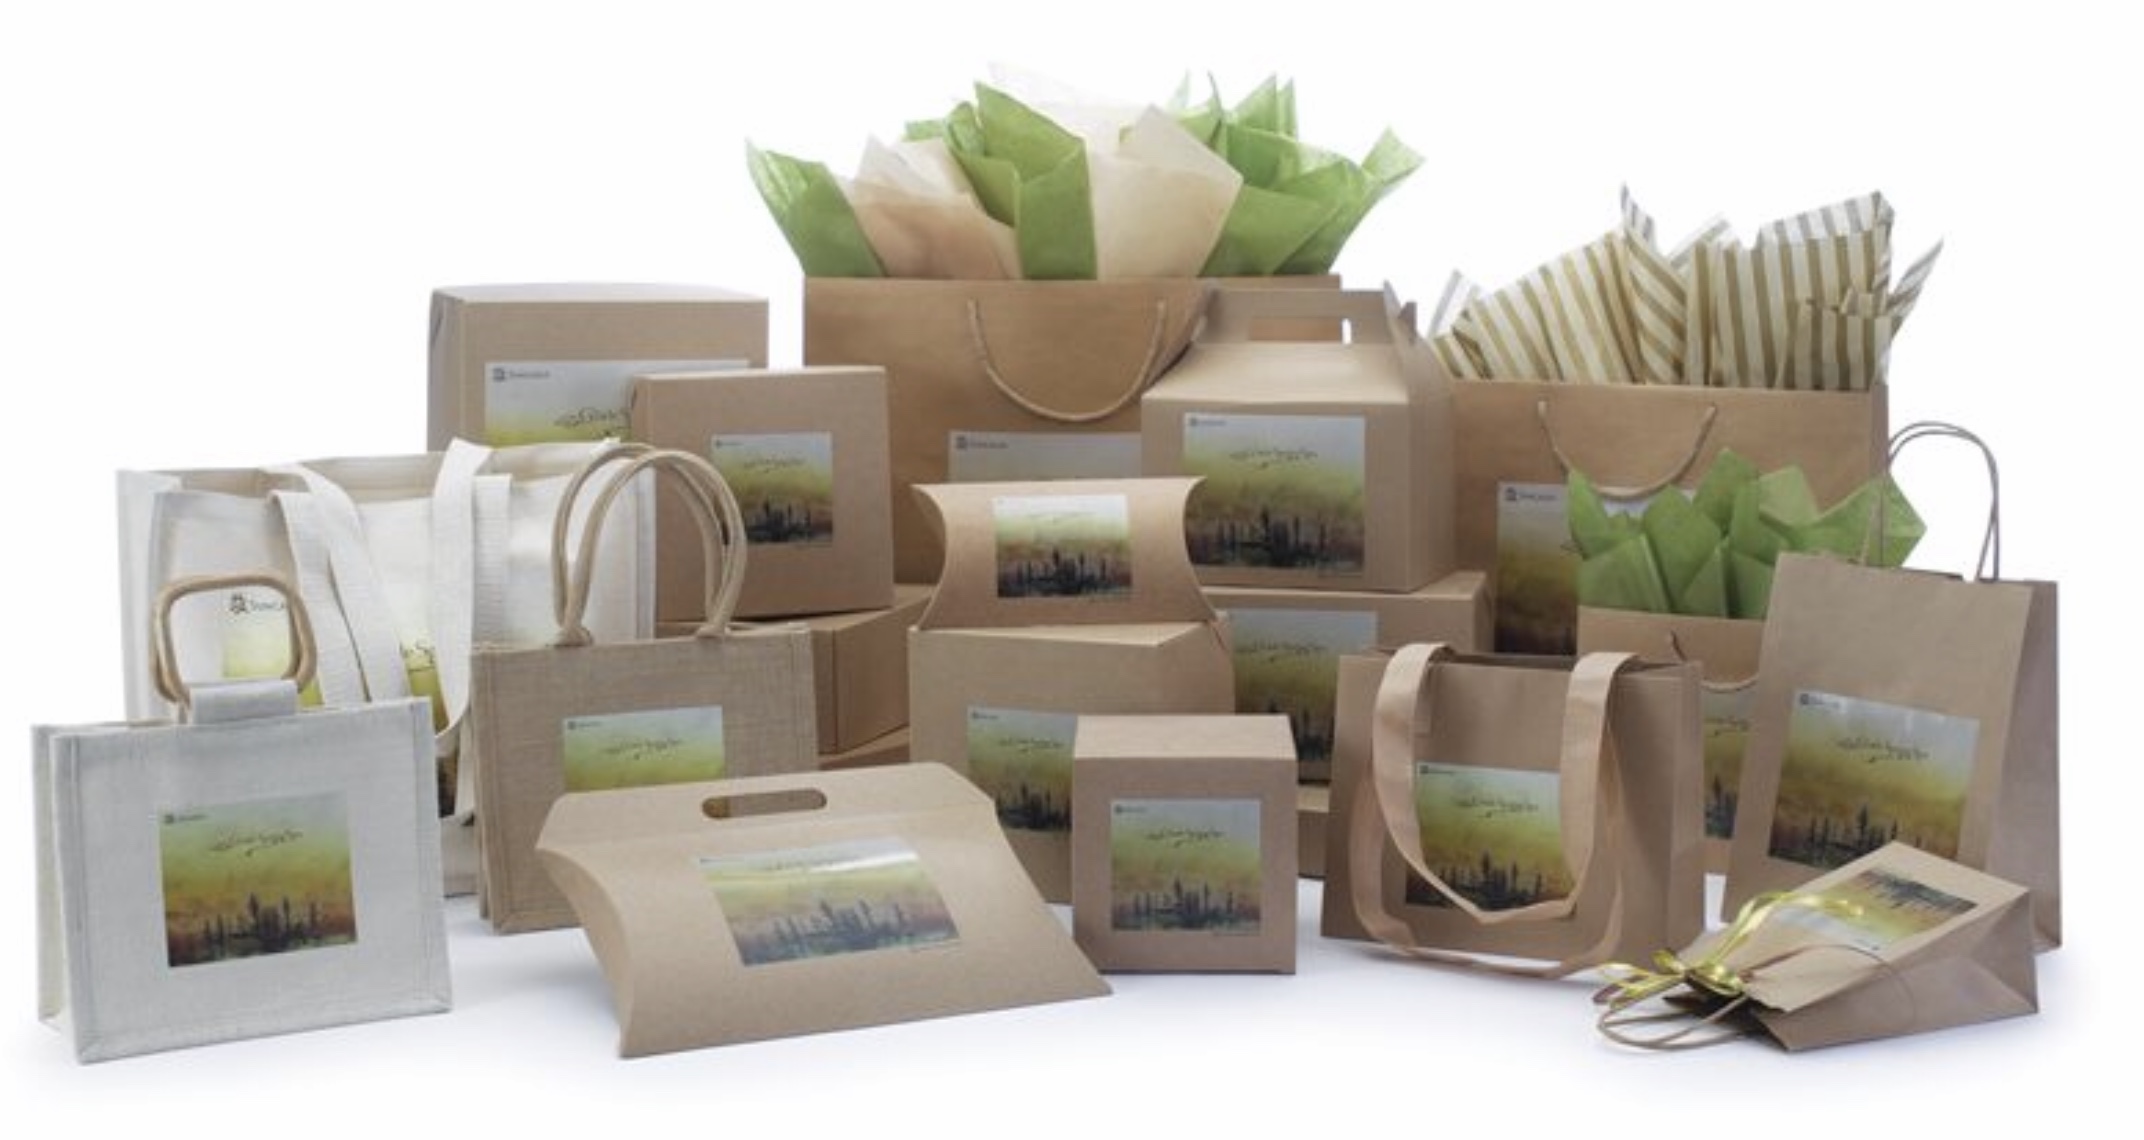 Packaging items. Экологически чистая упаковка. Экологичная упаковка для еды. Упаковка из Переработанных материалов. Красивая упаковка товара.